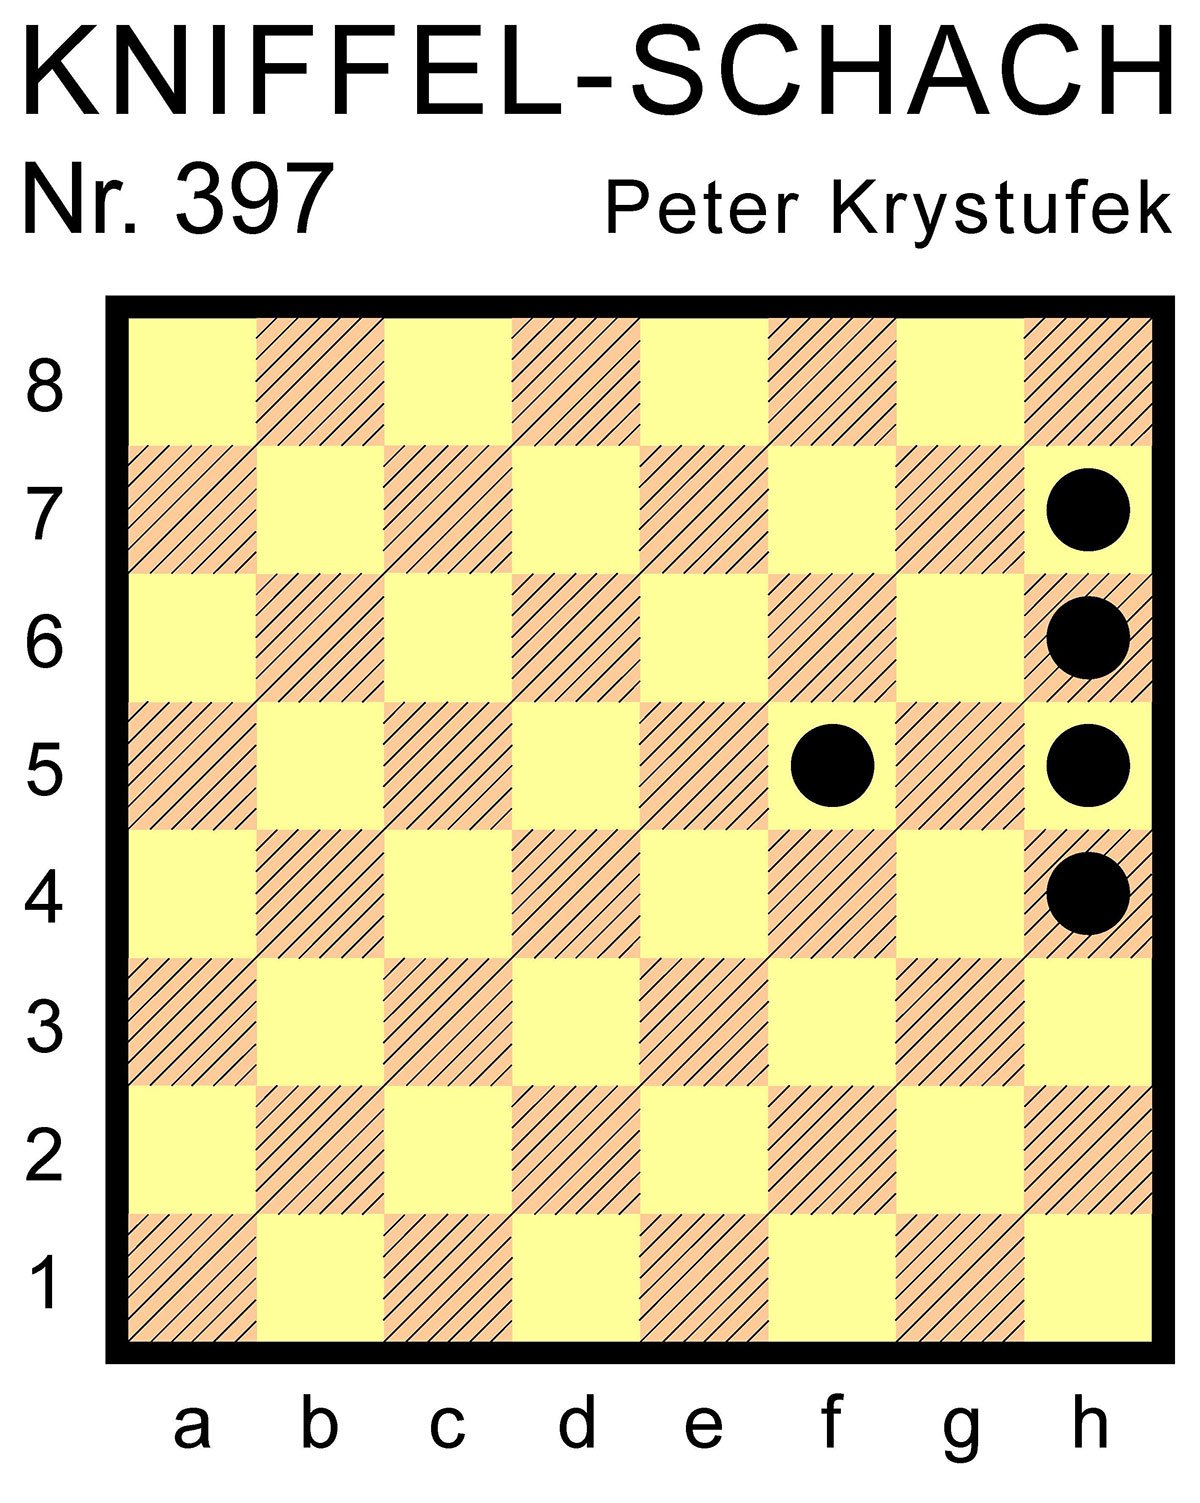 Kniffel-Schach Nr. 397